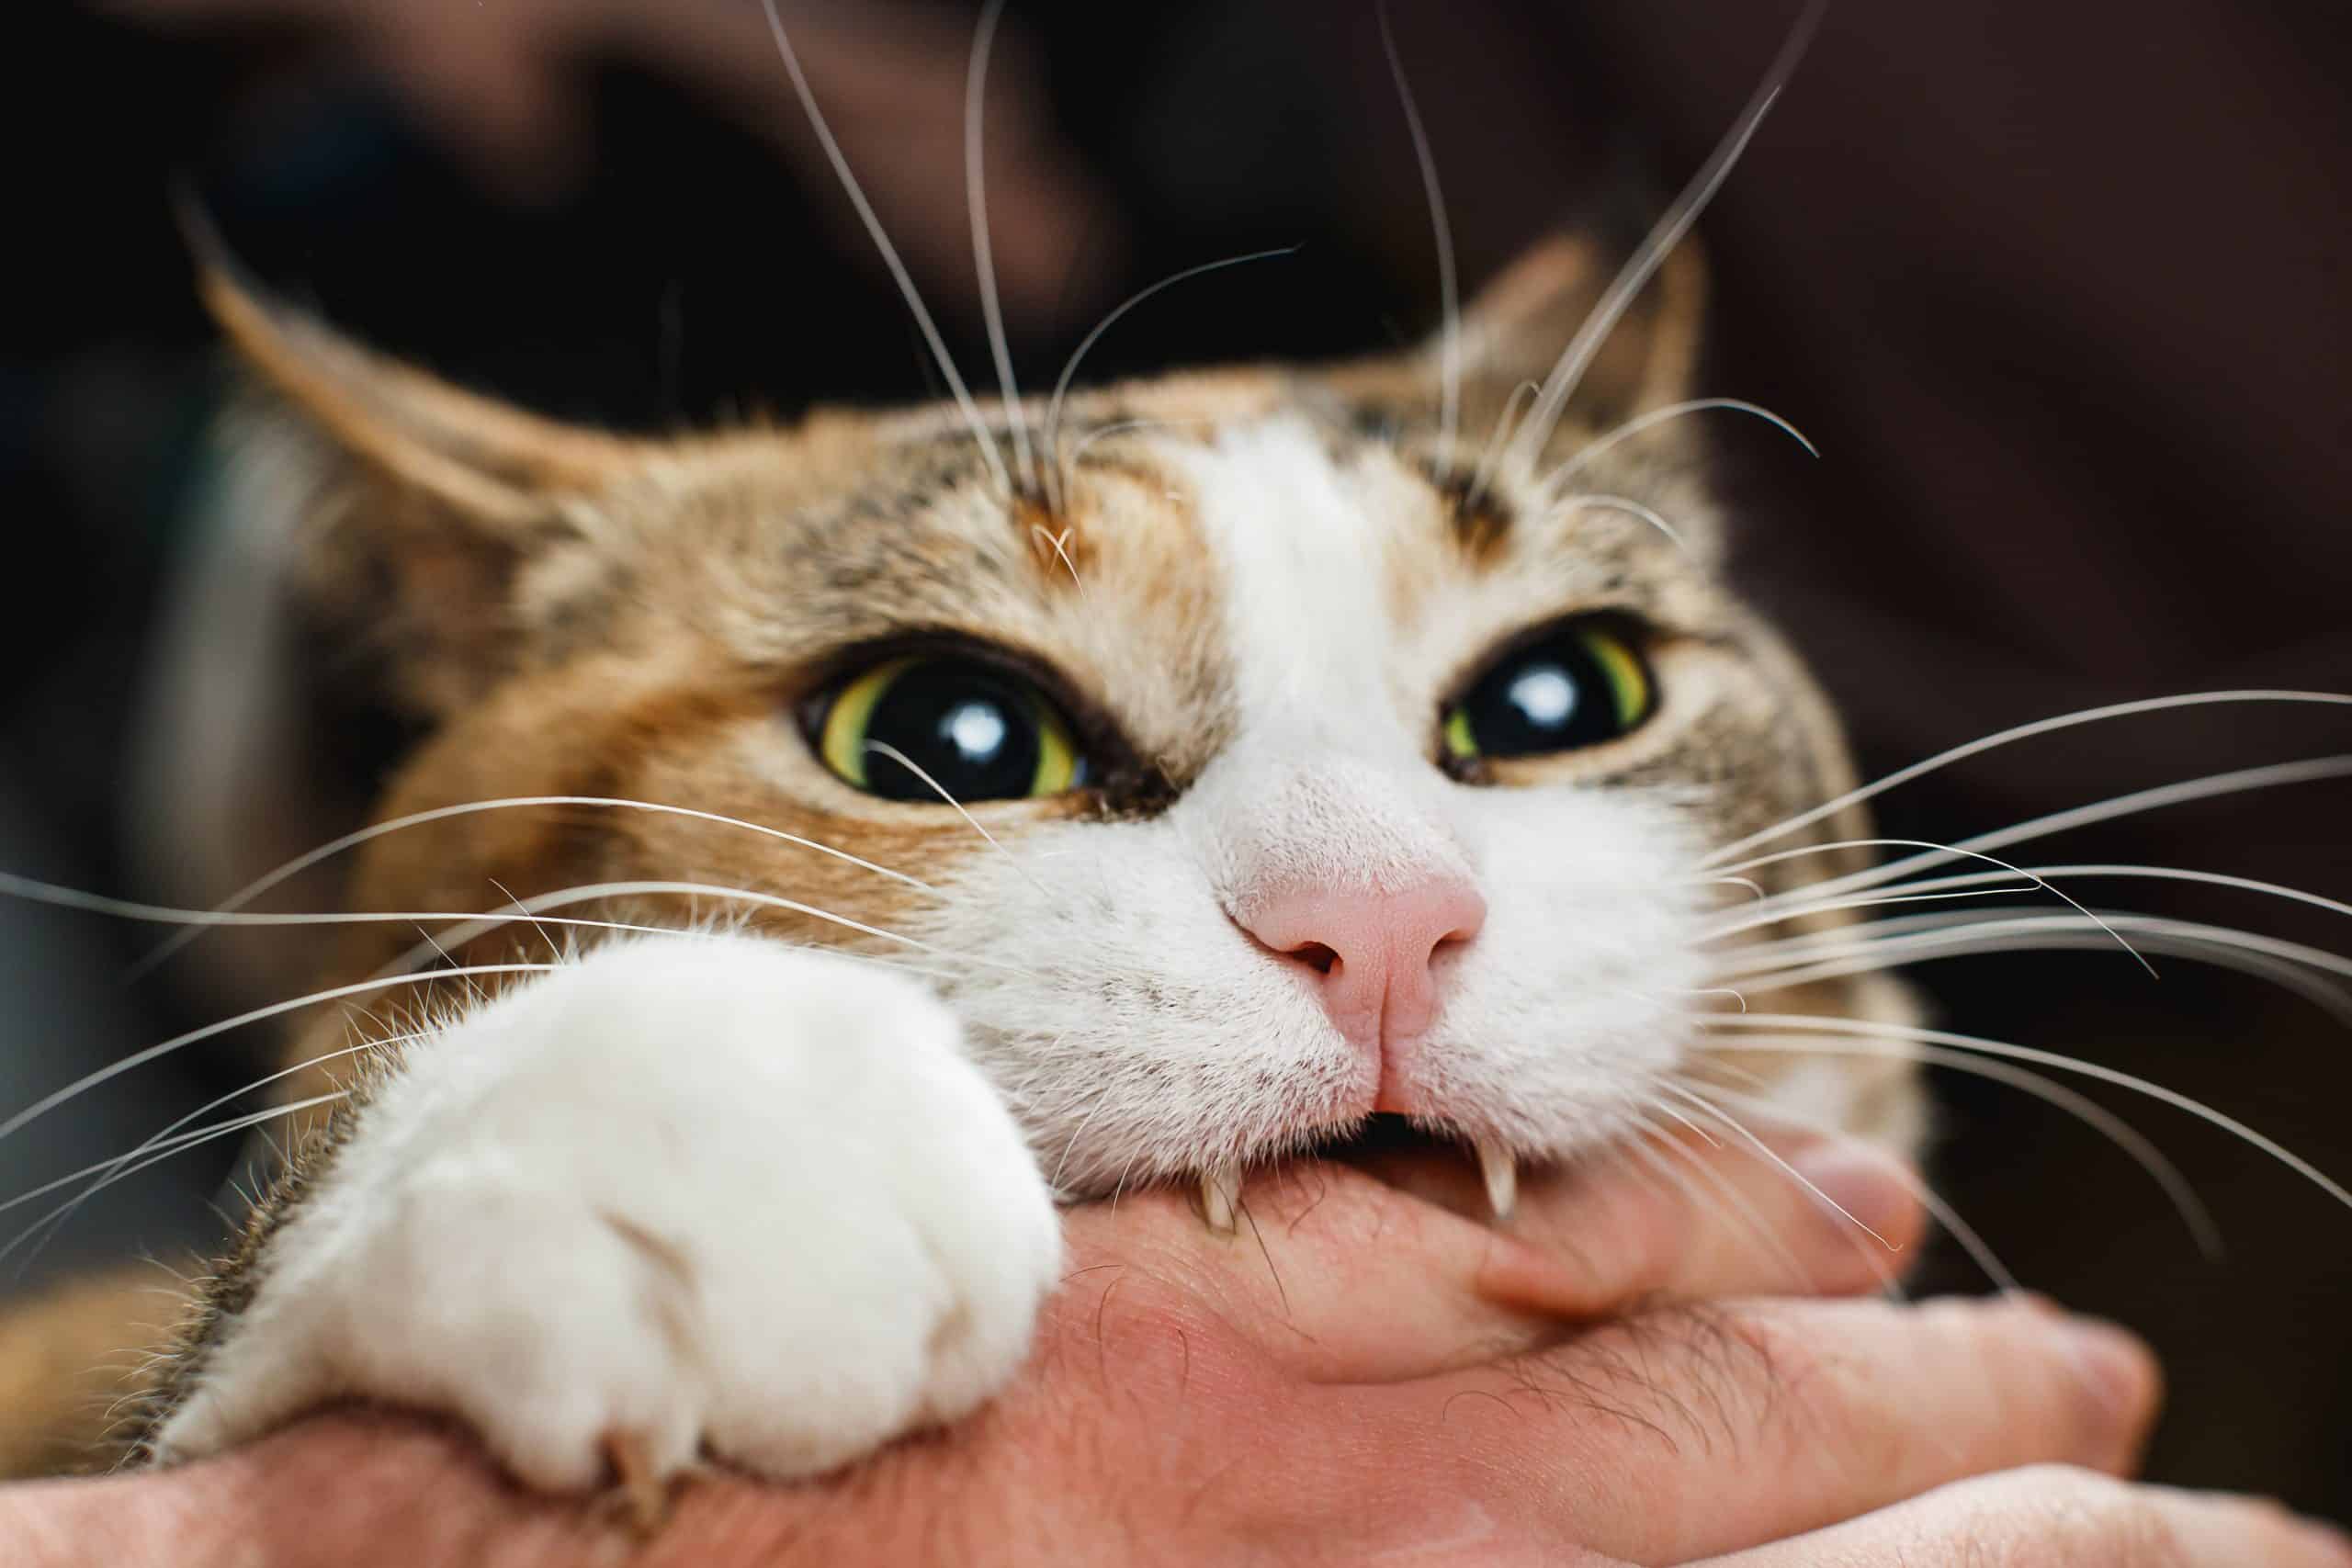 Cat bites hand